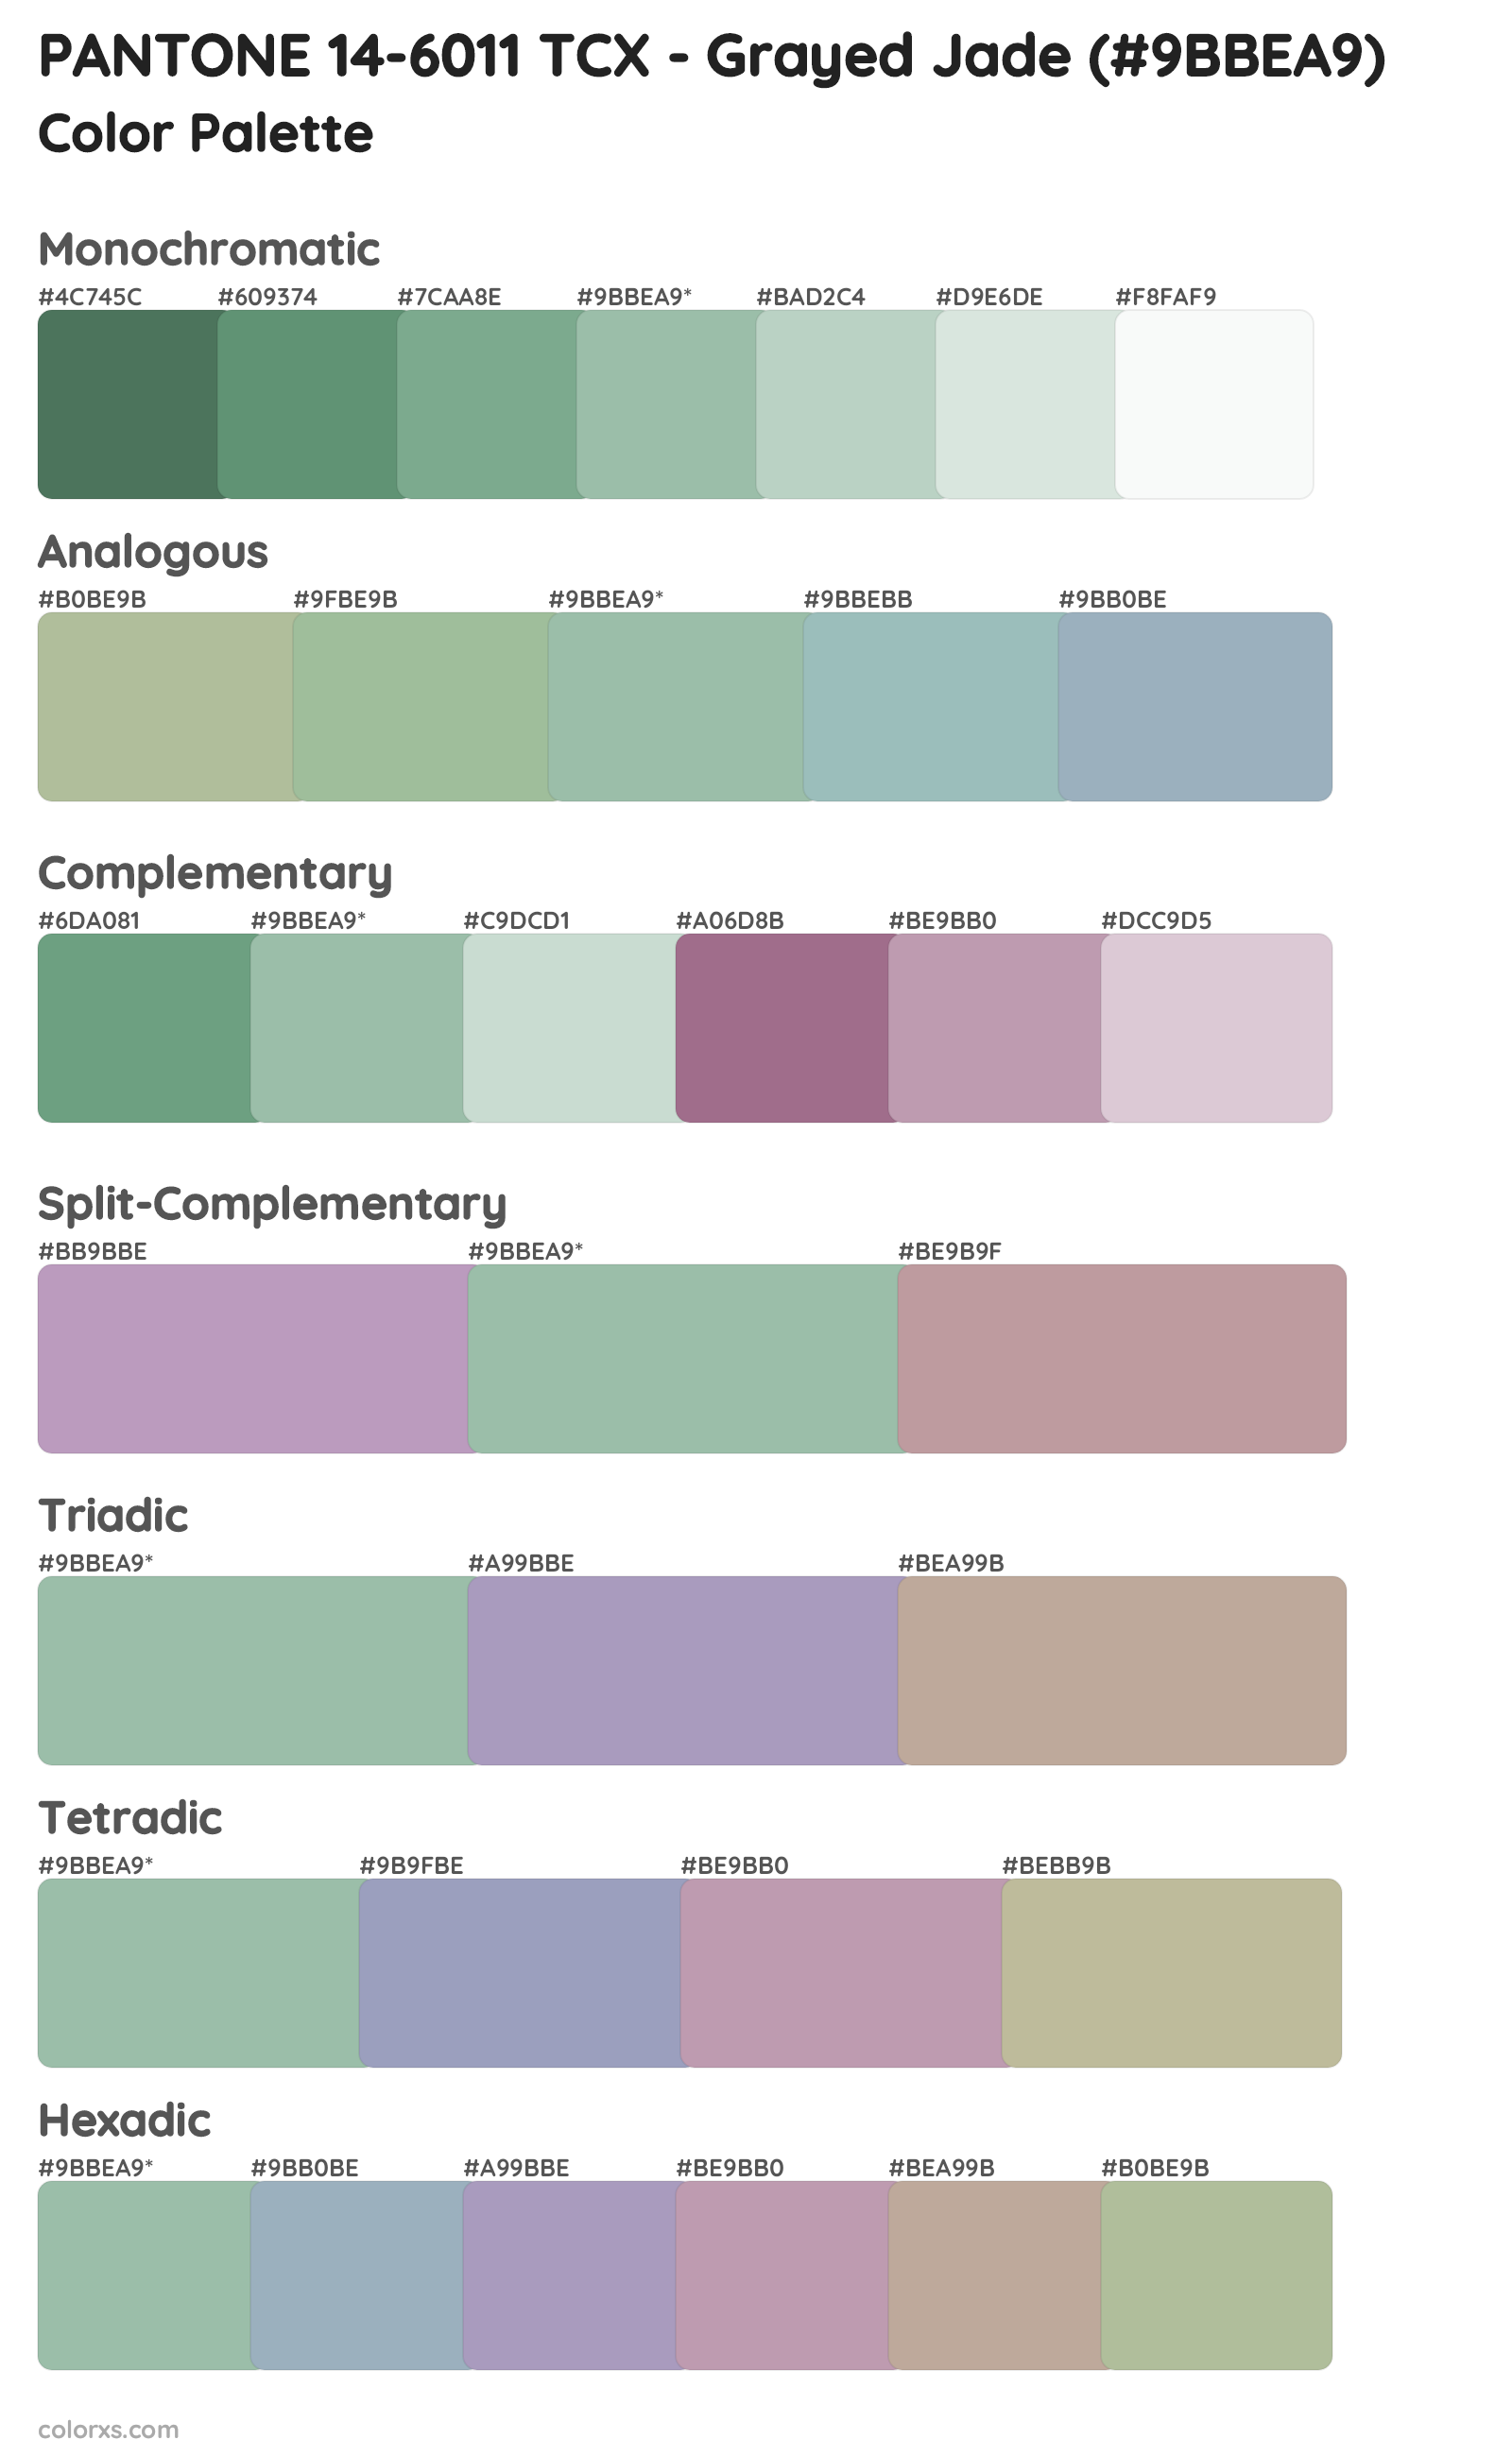 PANTONE 14-6011 TCX - Grayed Jade Color Scheme Palettes